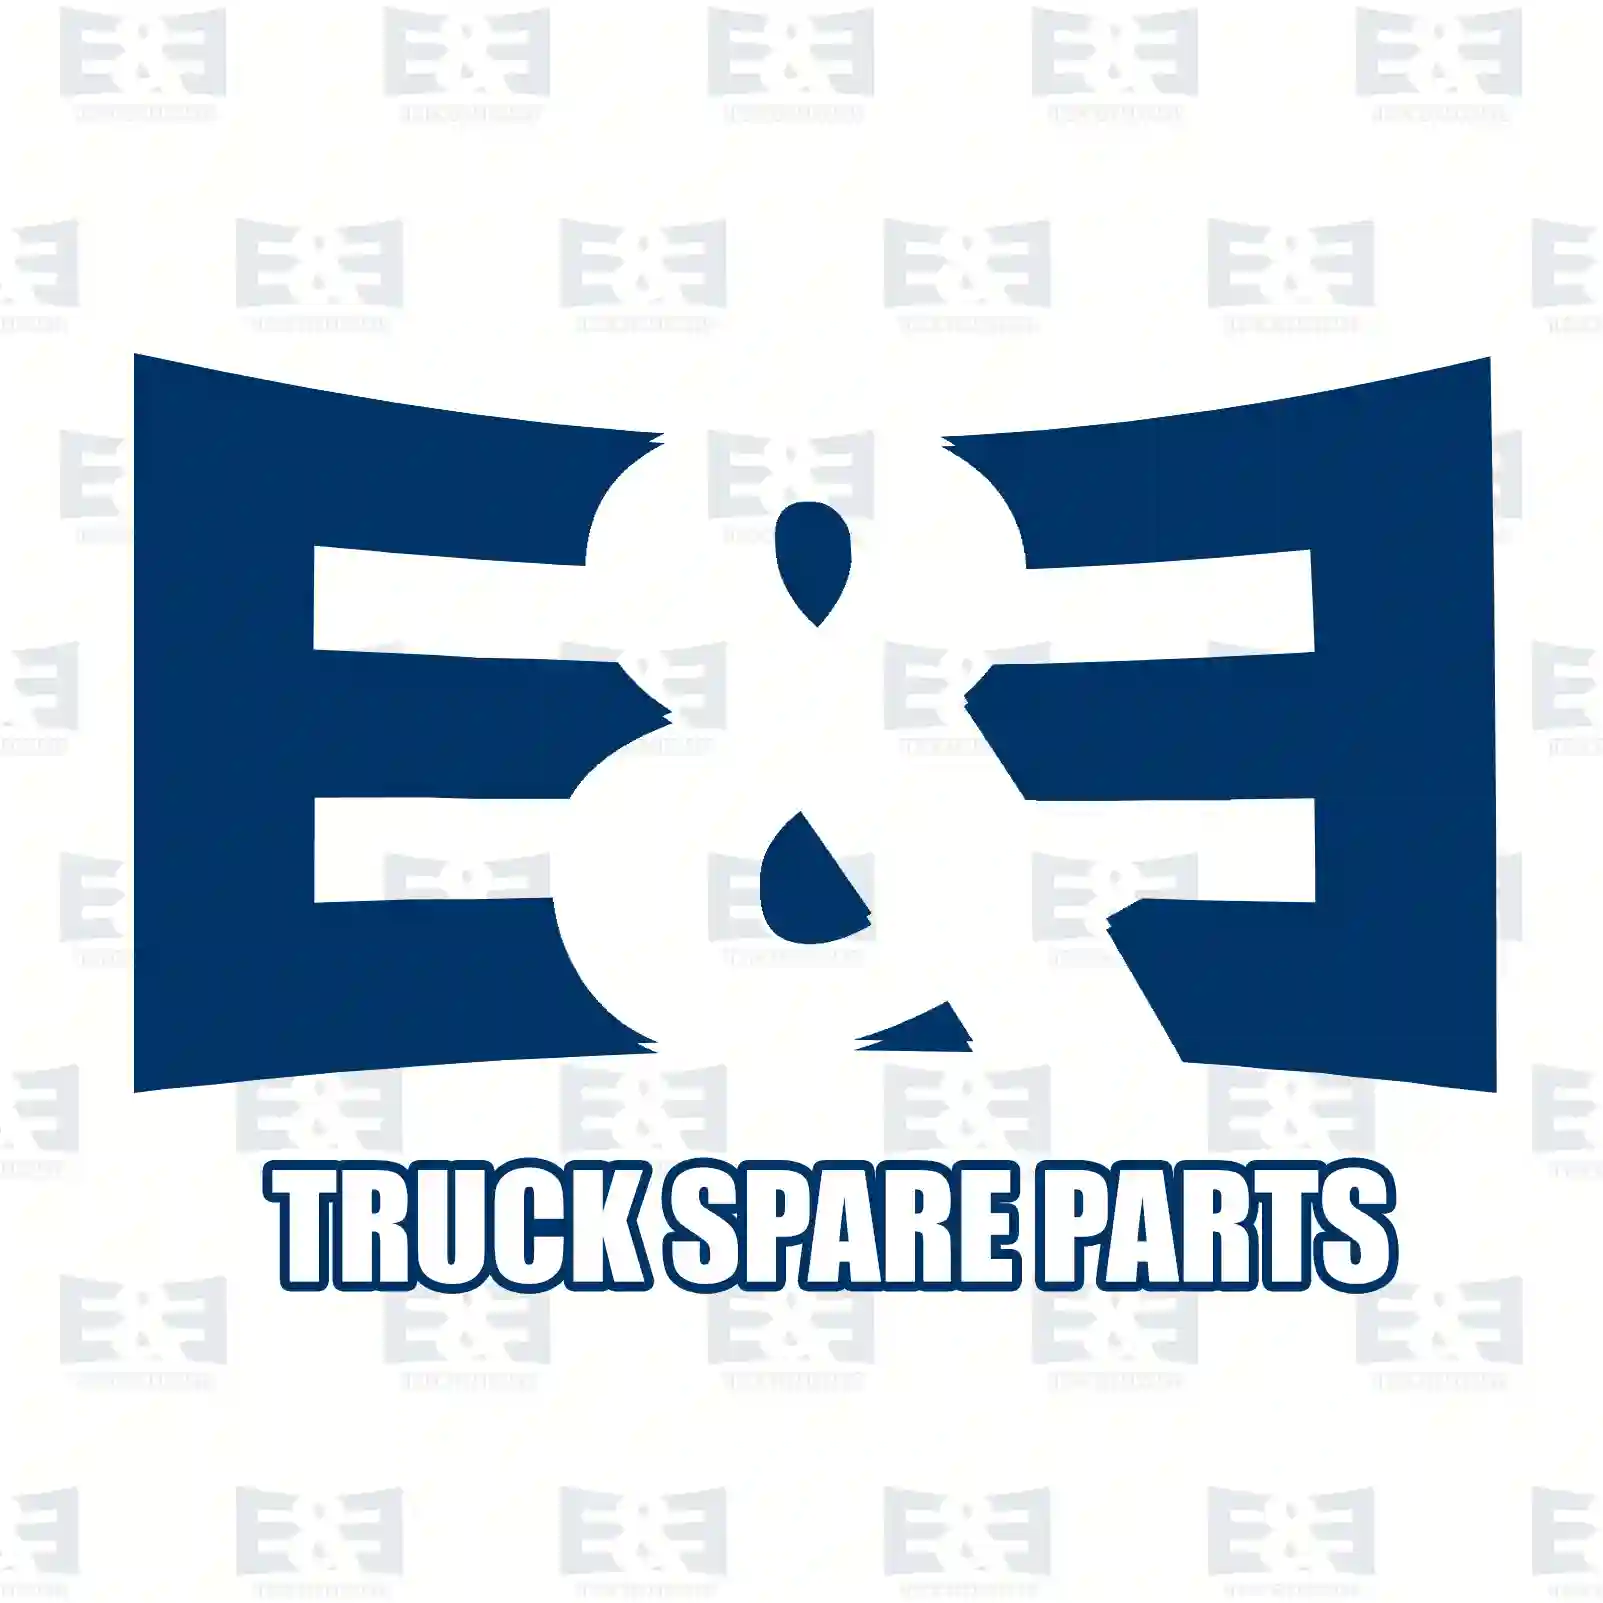 Repair kit, fuel filter, 2E2286063, 1315515, 0000910541, 0000911341, 0009900357, 0009900805, 5001834819, 1391896, 3095481 ||  2E2286063 E&E Truck Spare Parts | Truck Spare Parts, Auotomotive Spare Parts Repair kit, fuel filter, 2E2286063, 1315515, 0000910541, 0000911341, 0009900357, 0009900805, 5001834819, 1391896, 3095481 ||  2E2286063 E&E Truck Spare Parts | Truck Spare Parts, Auotomotive Spare Parts